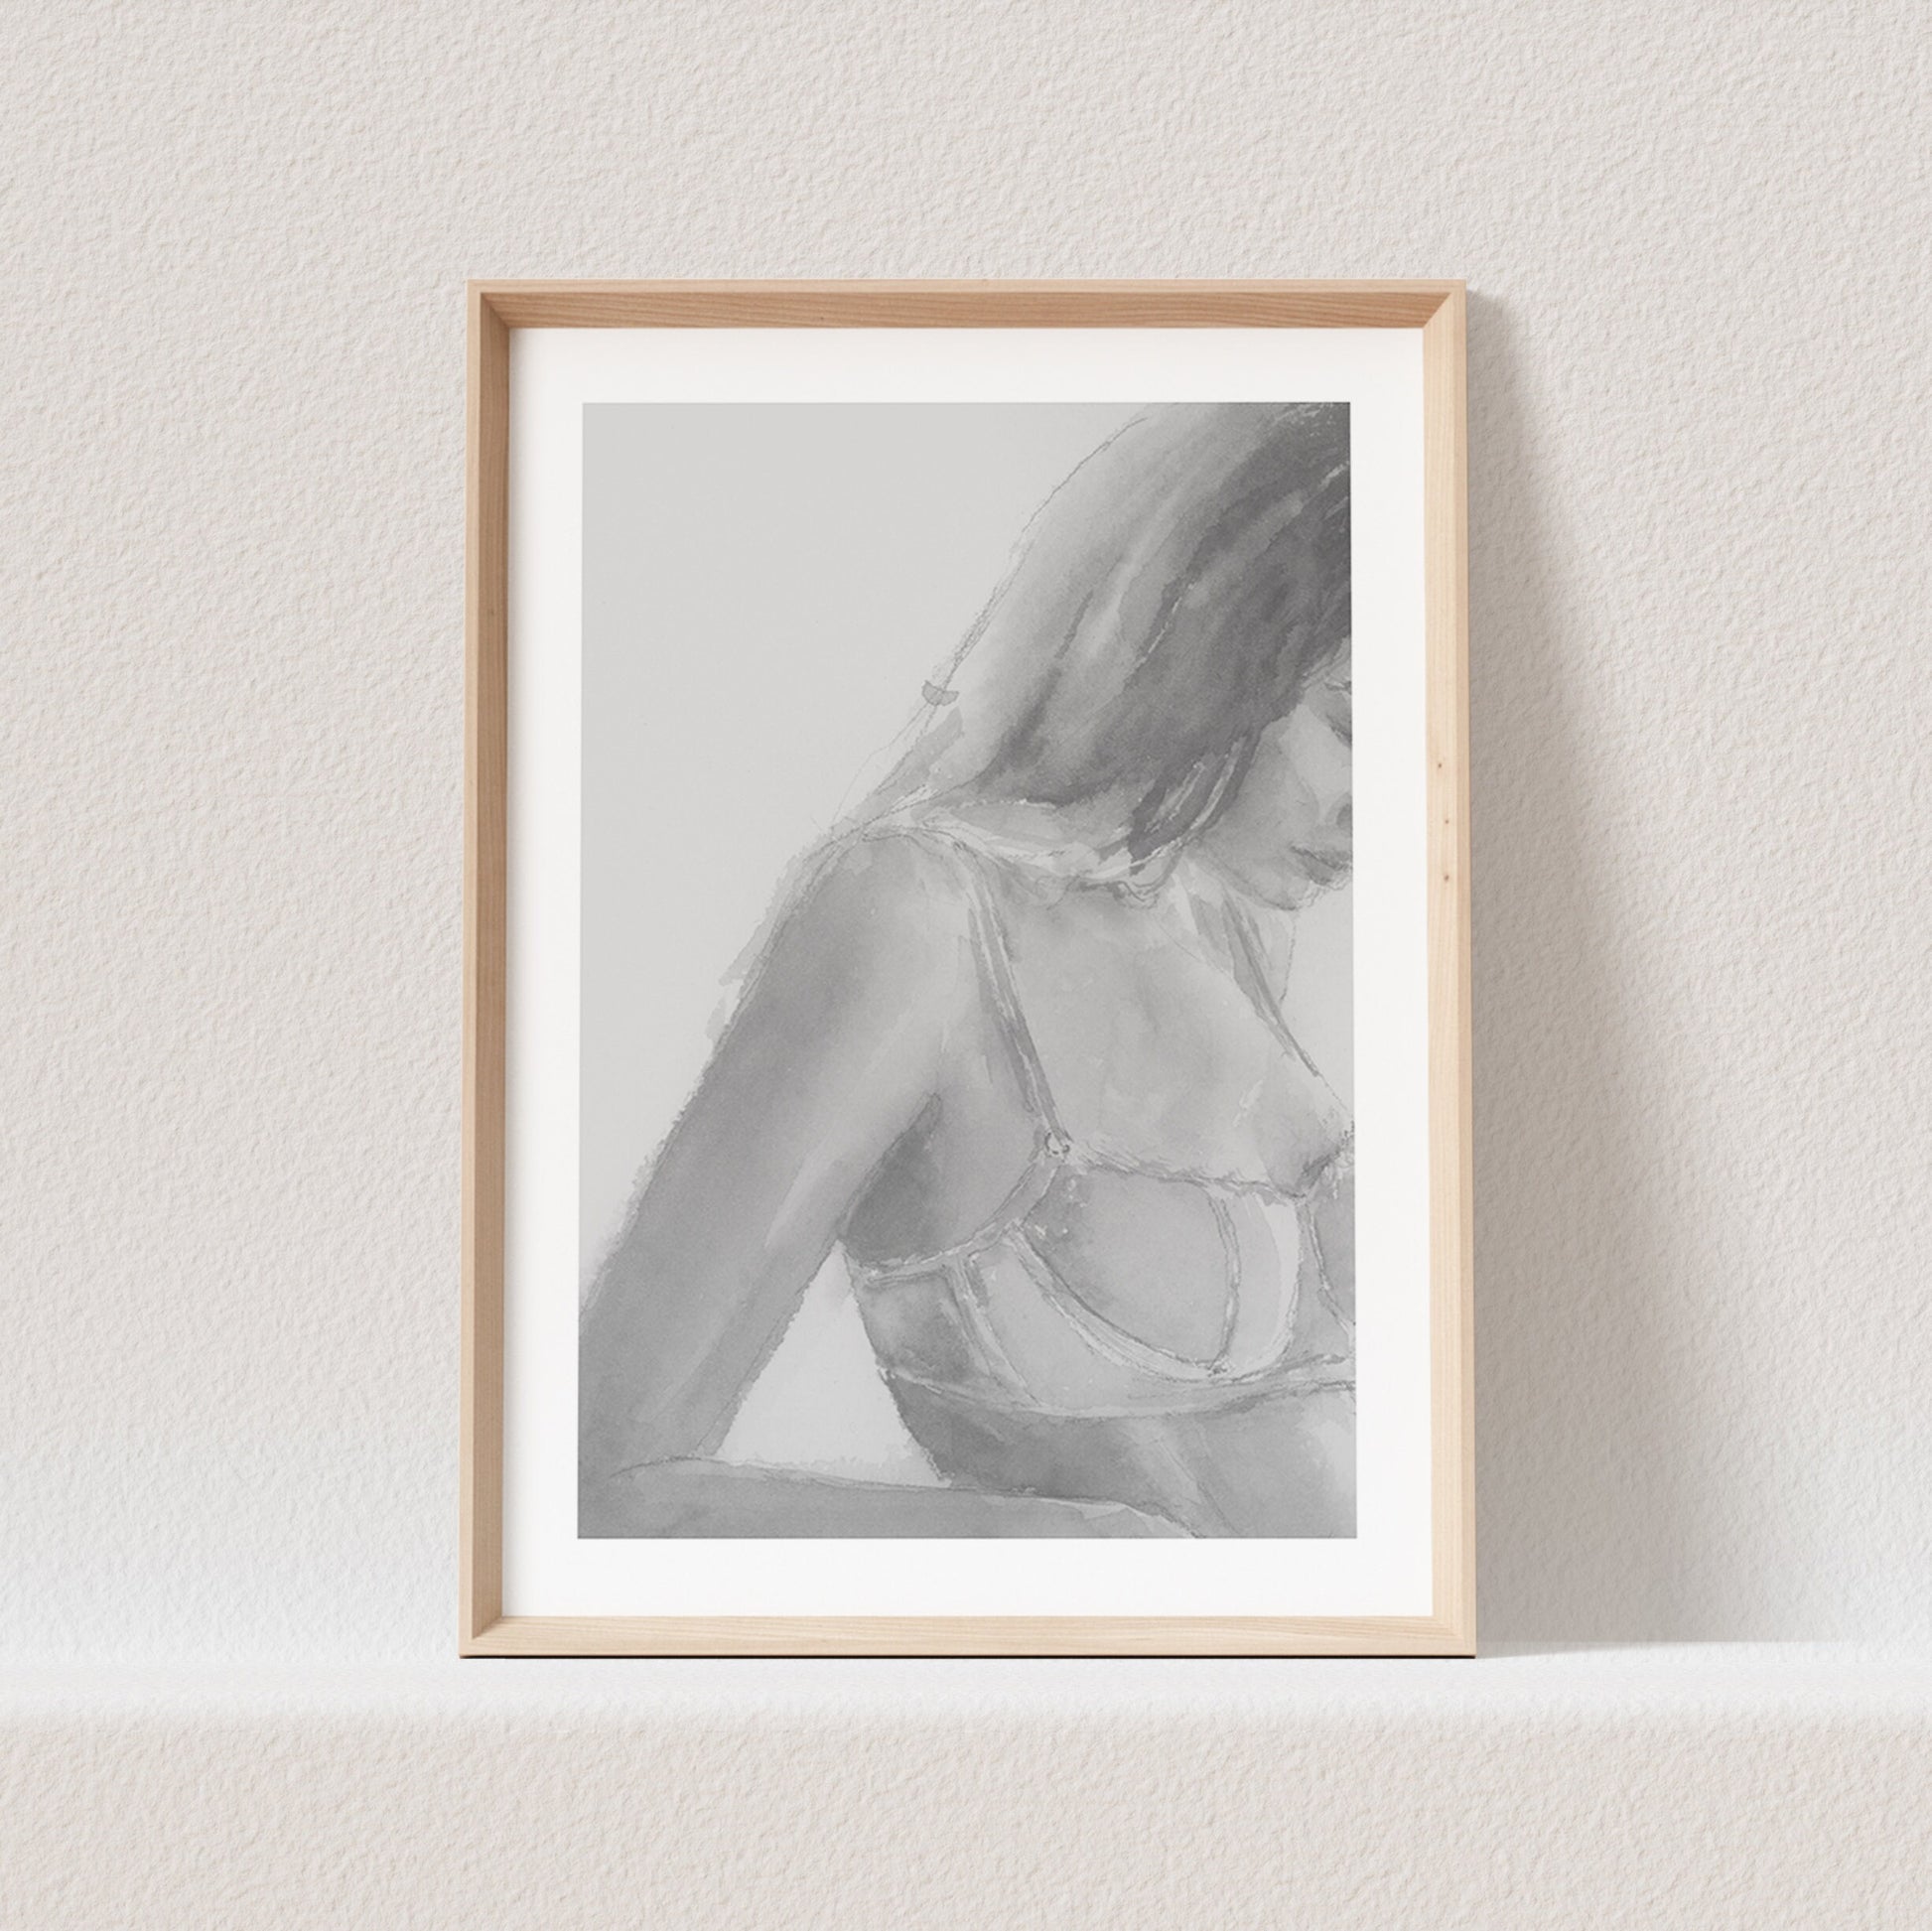 Frau in Unterwäsche Bild Aquarell Kunstdruck Poster Sinnliche Frau Erotisches Wandbild Wanddeko Schlafzimmer Print